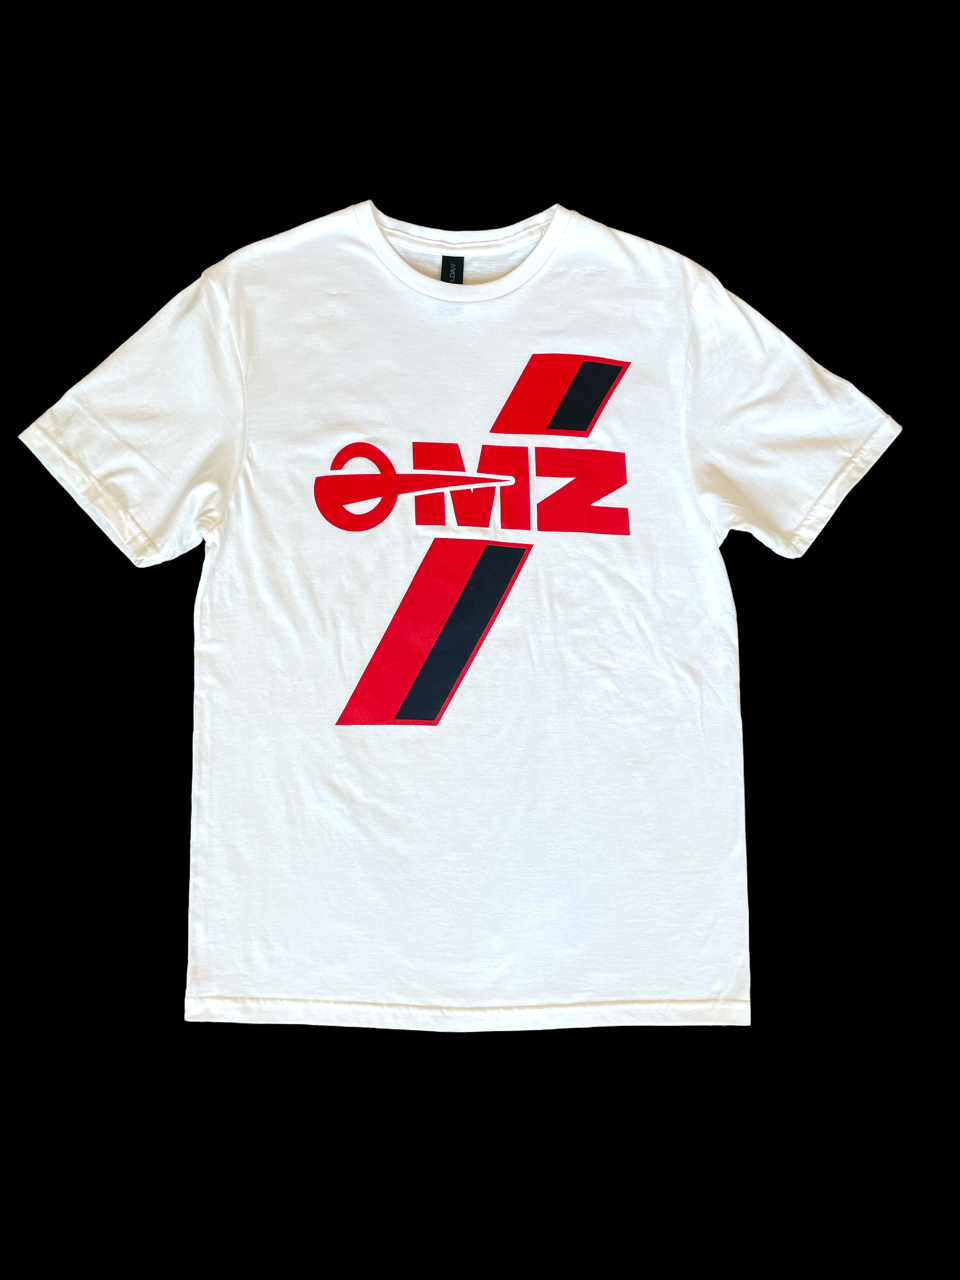 MZ Tshirt 